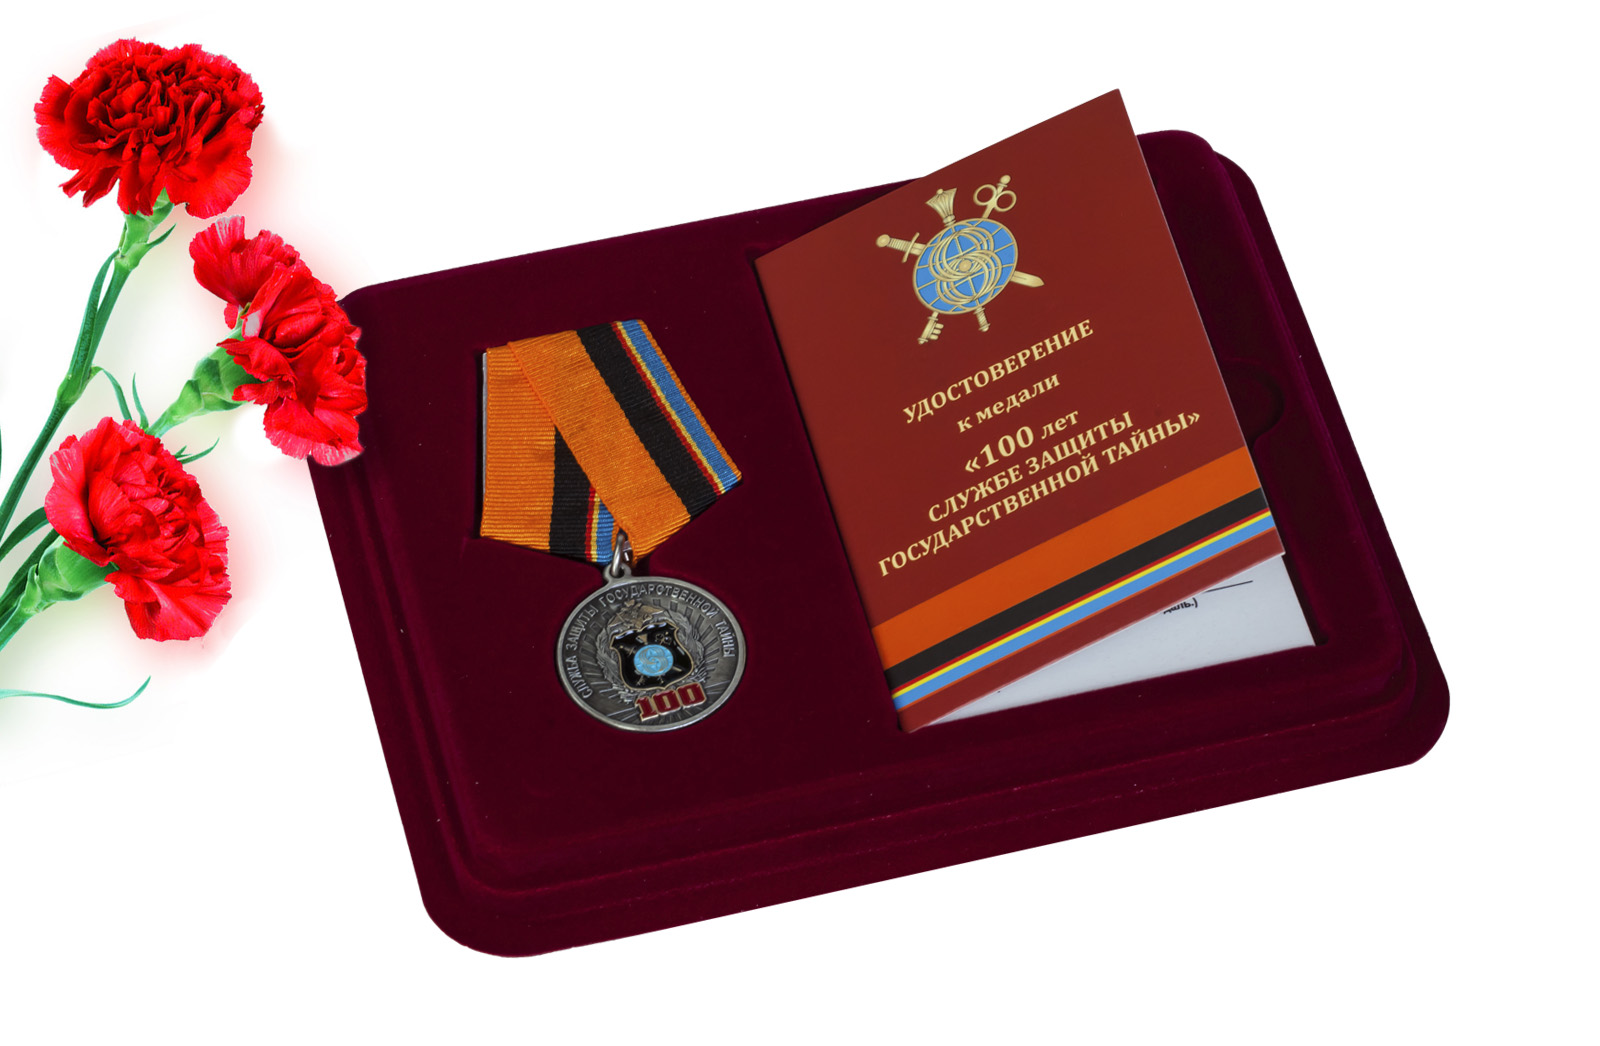 Купить юбилейную медаль 100 лет Службе защиты государственной тайны оптом или в розницу